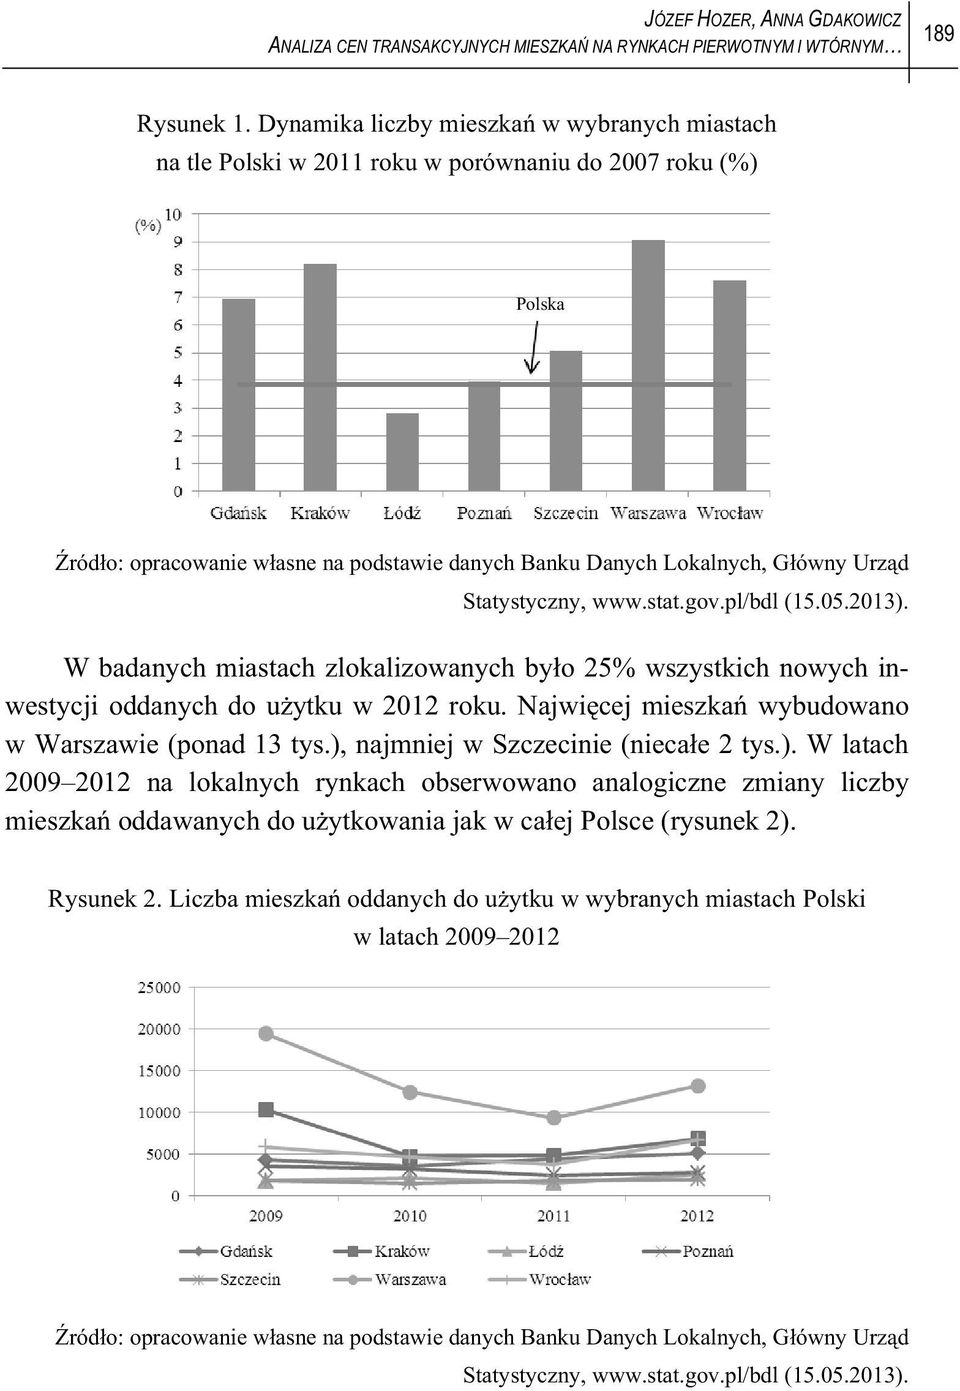 sa.gov.pl/bdl (15.05.2013). W badanych miasach zlokalizowanych byo 25% wszyskich nowych inwesycji oddanych do uyku w 2012 roku. Najwicej mieszka wybudowano w Warszawie (ponad 13 ys.